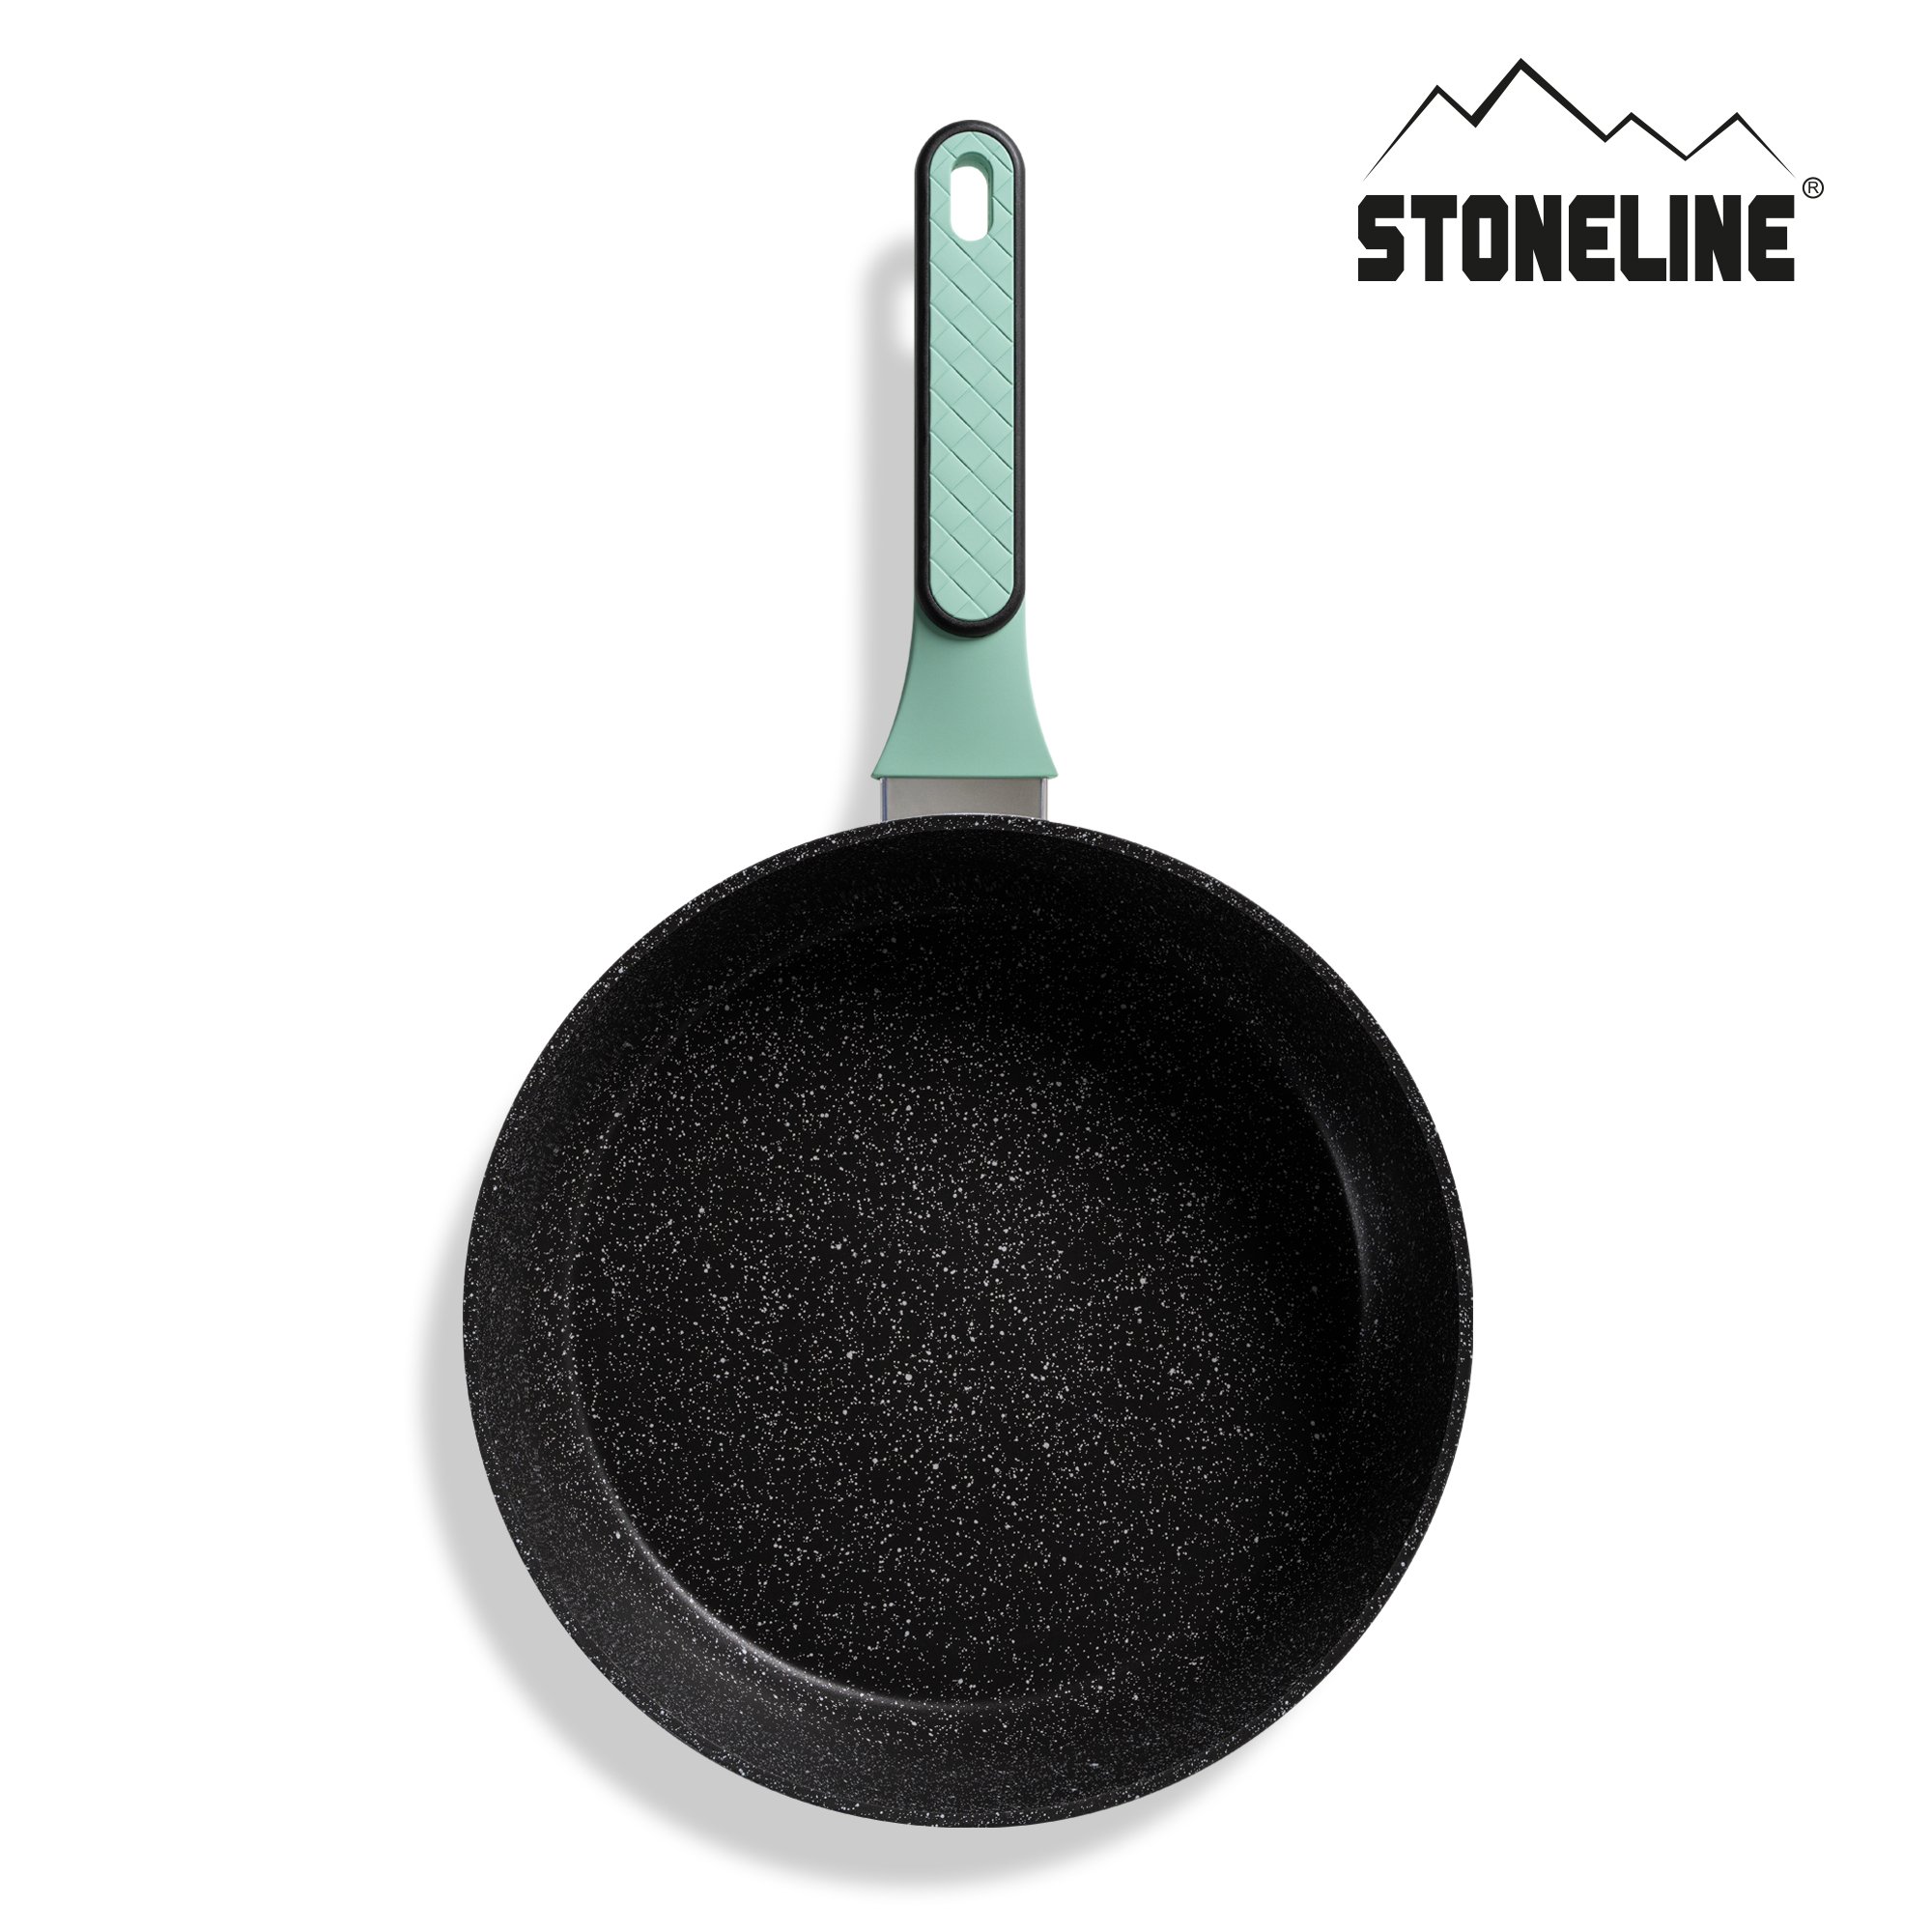 Sartén STONELINE® Mint 28 cm con tapa, antiadherente e inducción, apta para horno